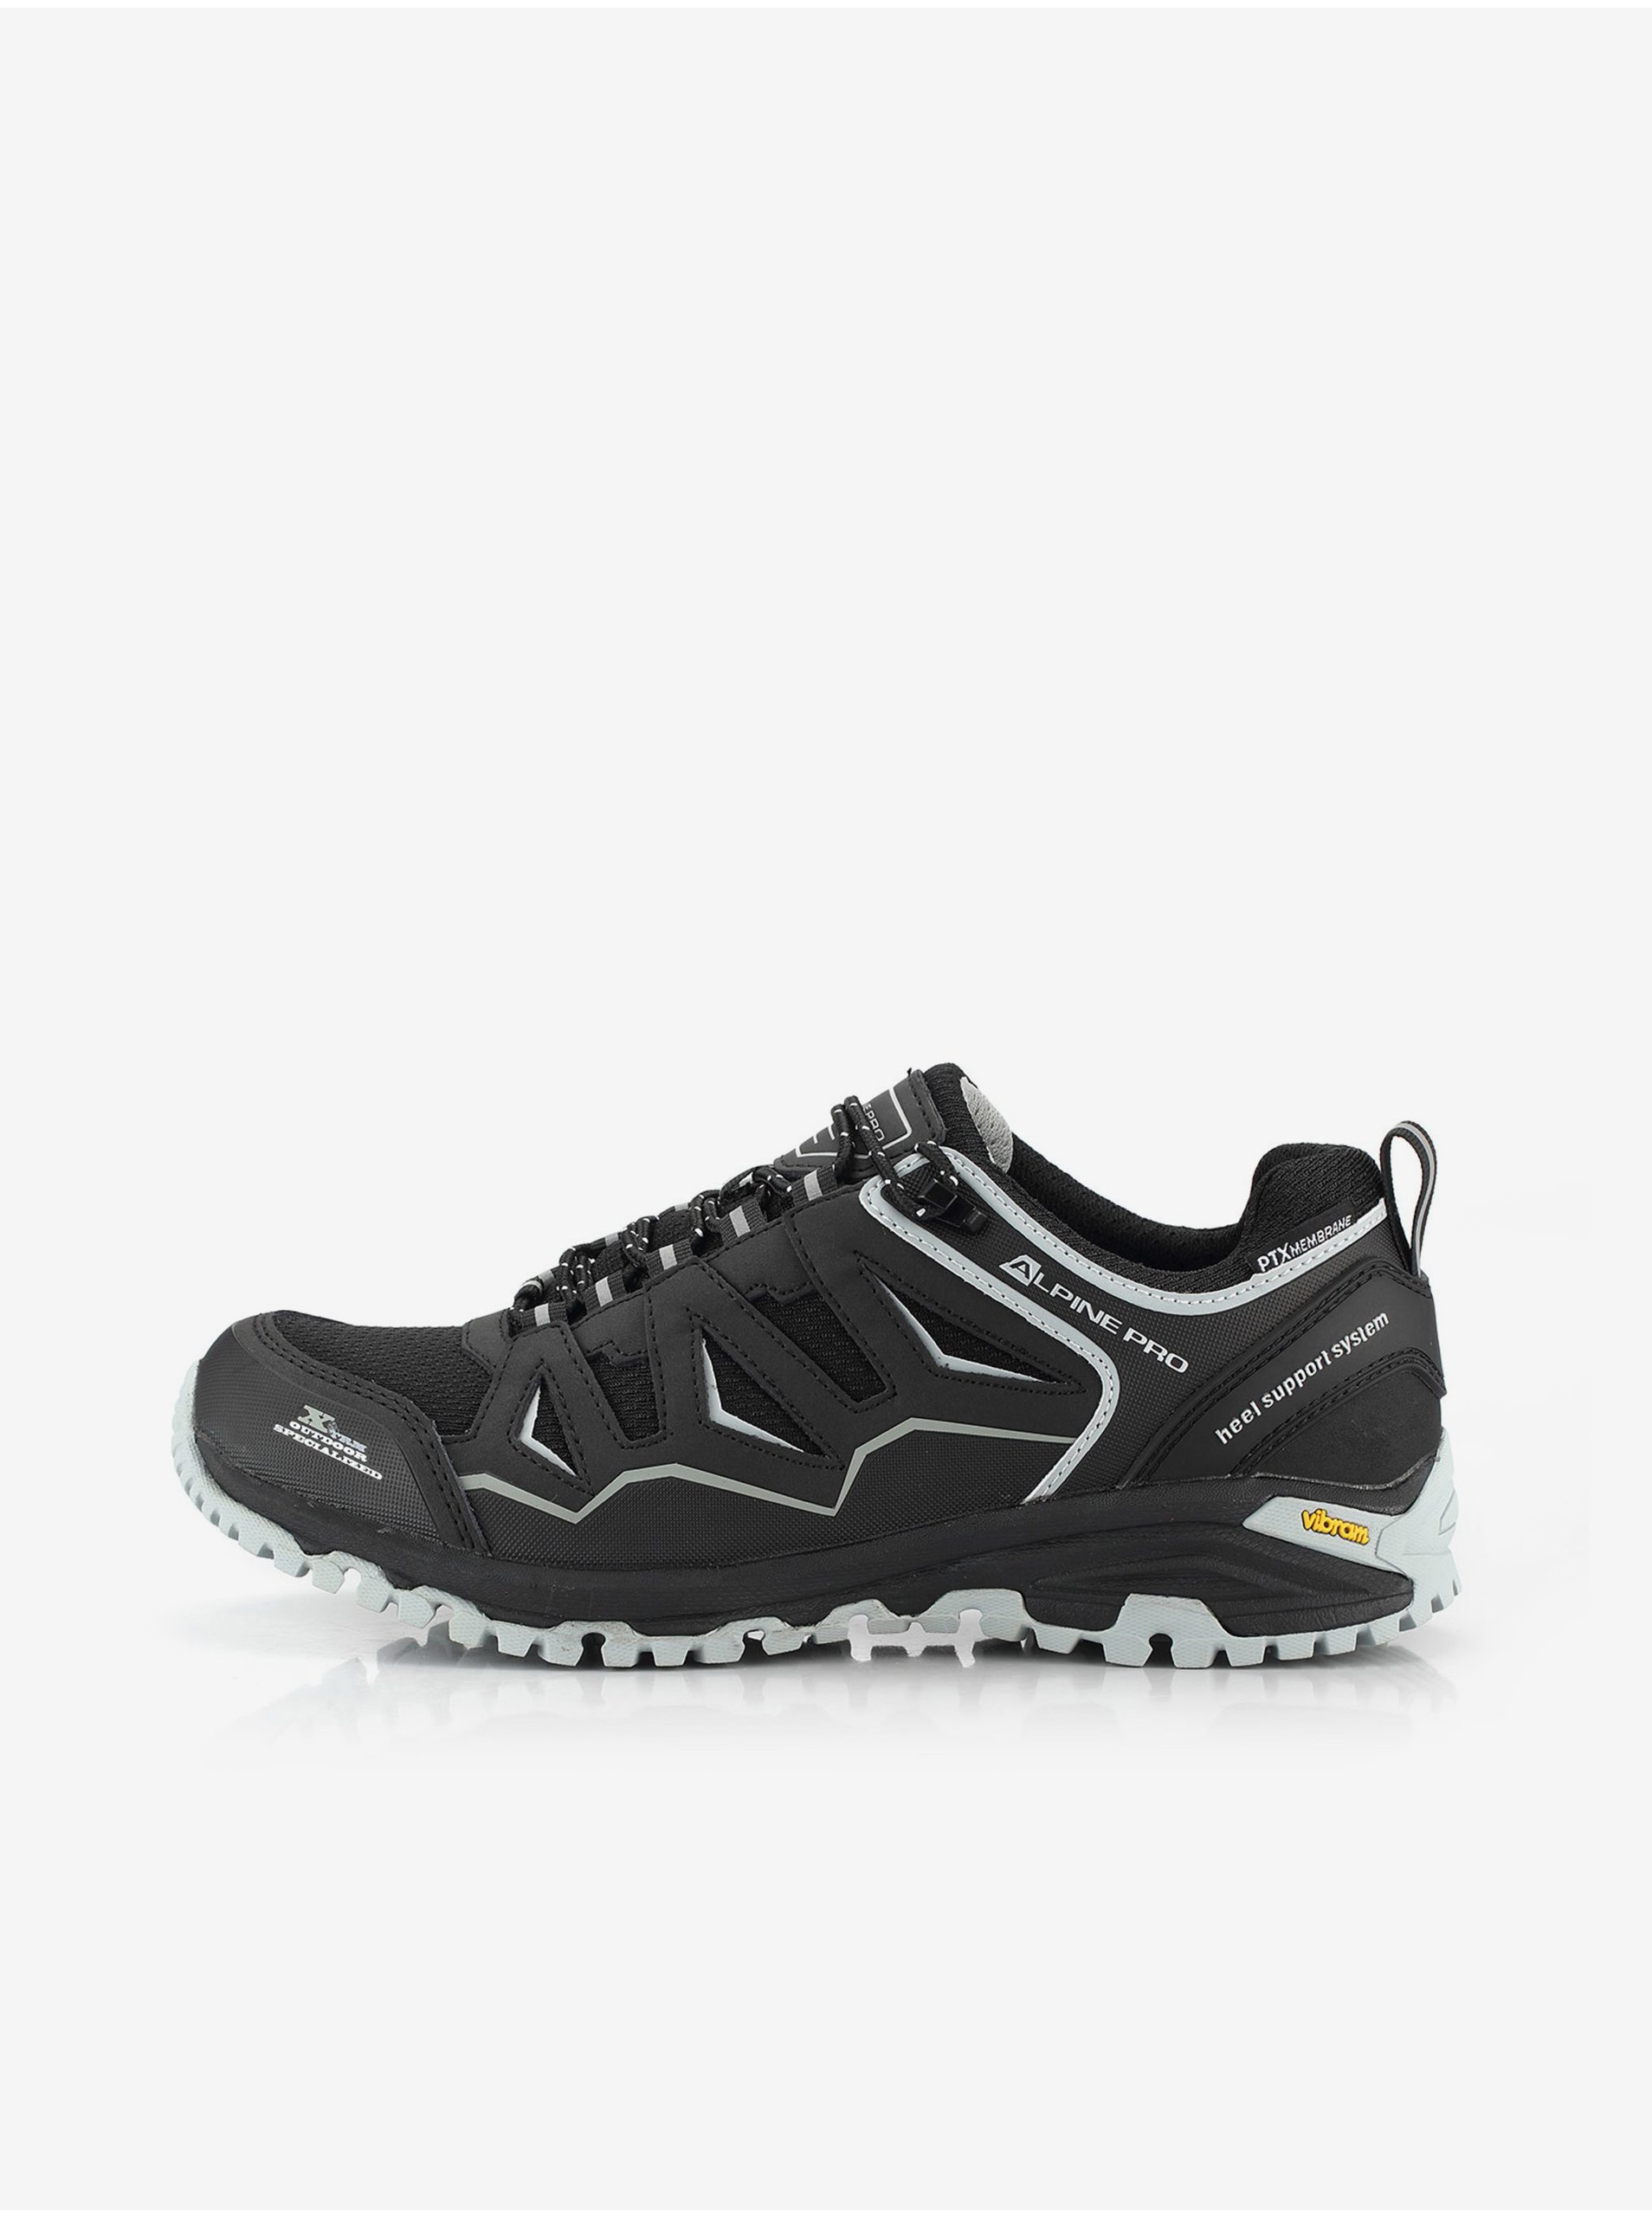 E-shop Outdoorová obuv s membránou ptx ALPINE PRO GONAWE černá